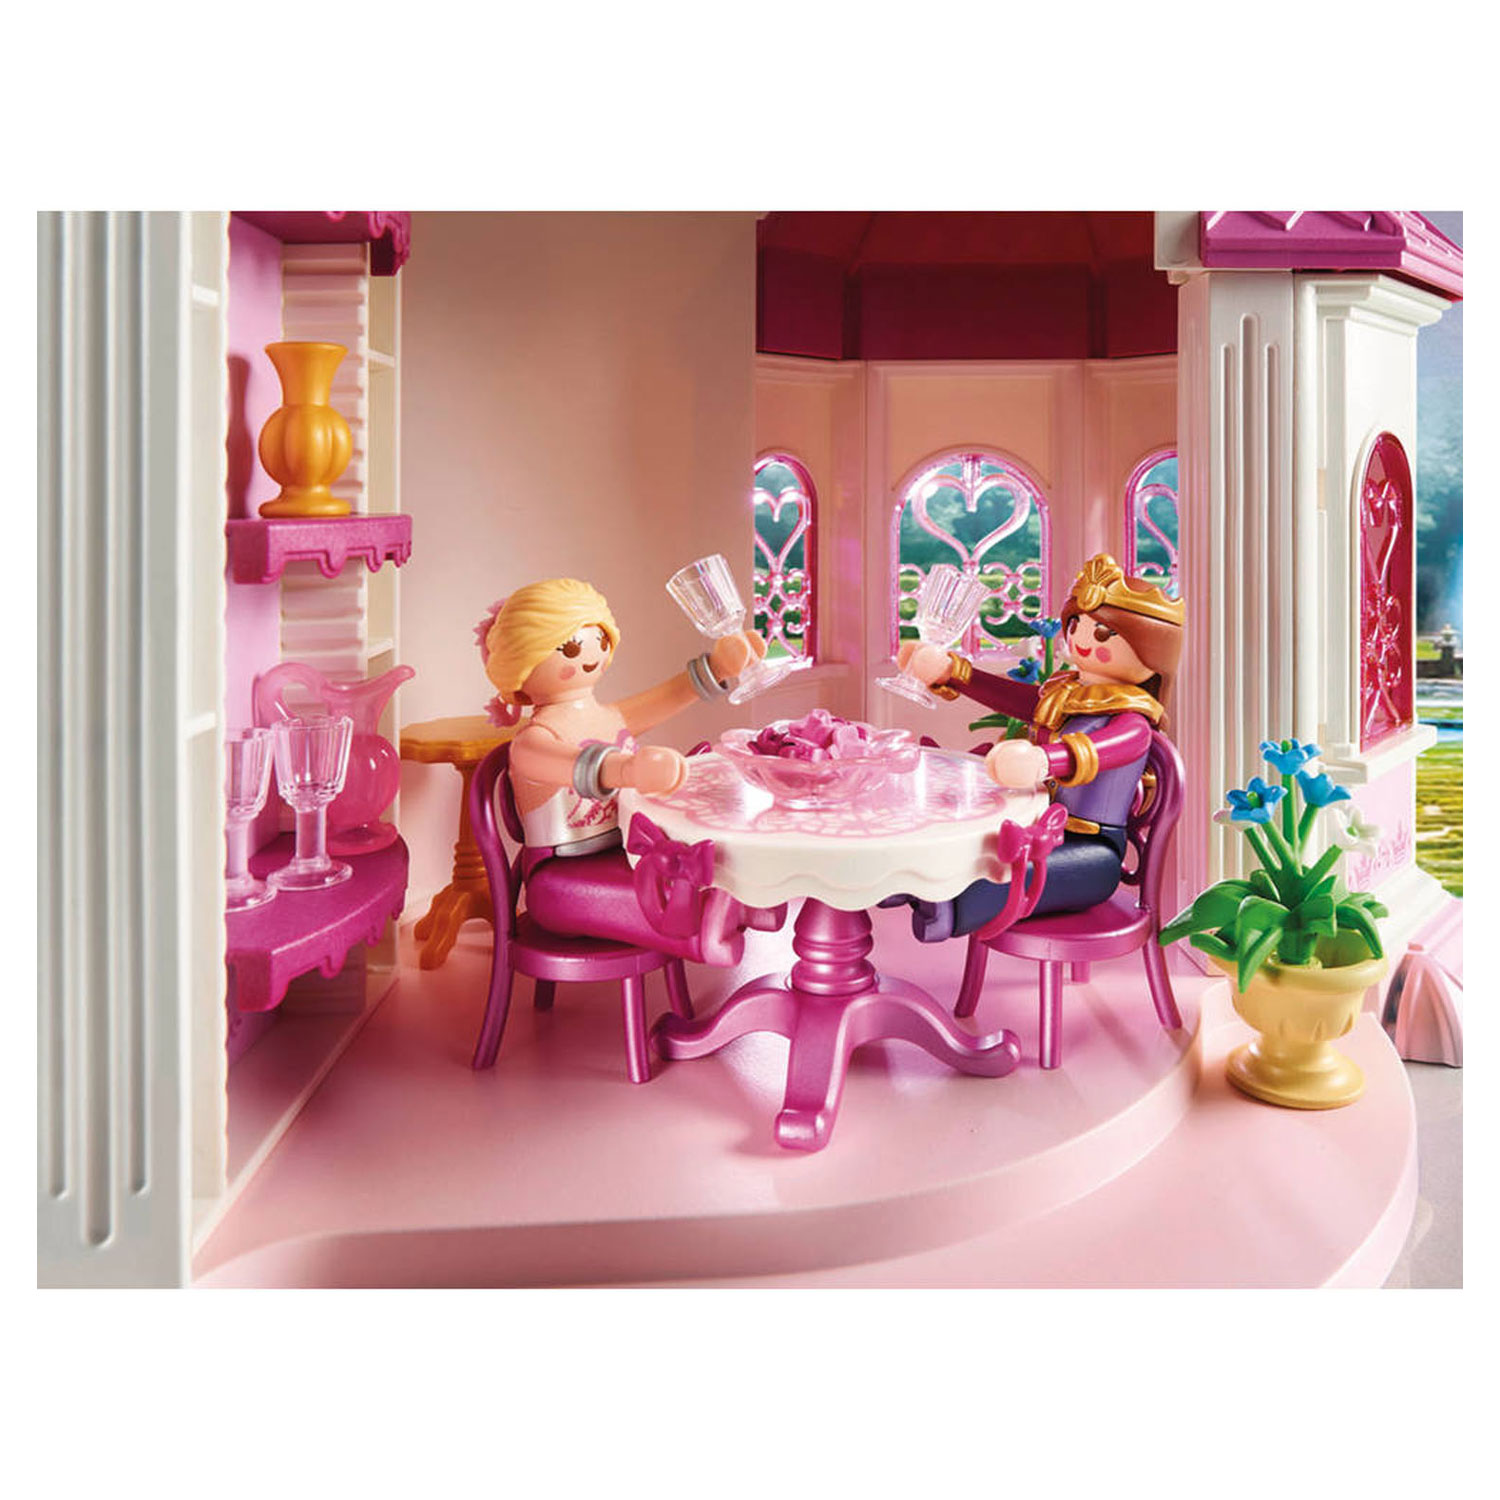 Playmobil Princess Prinsessenkasteel - 70448